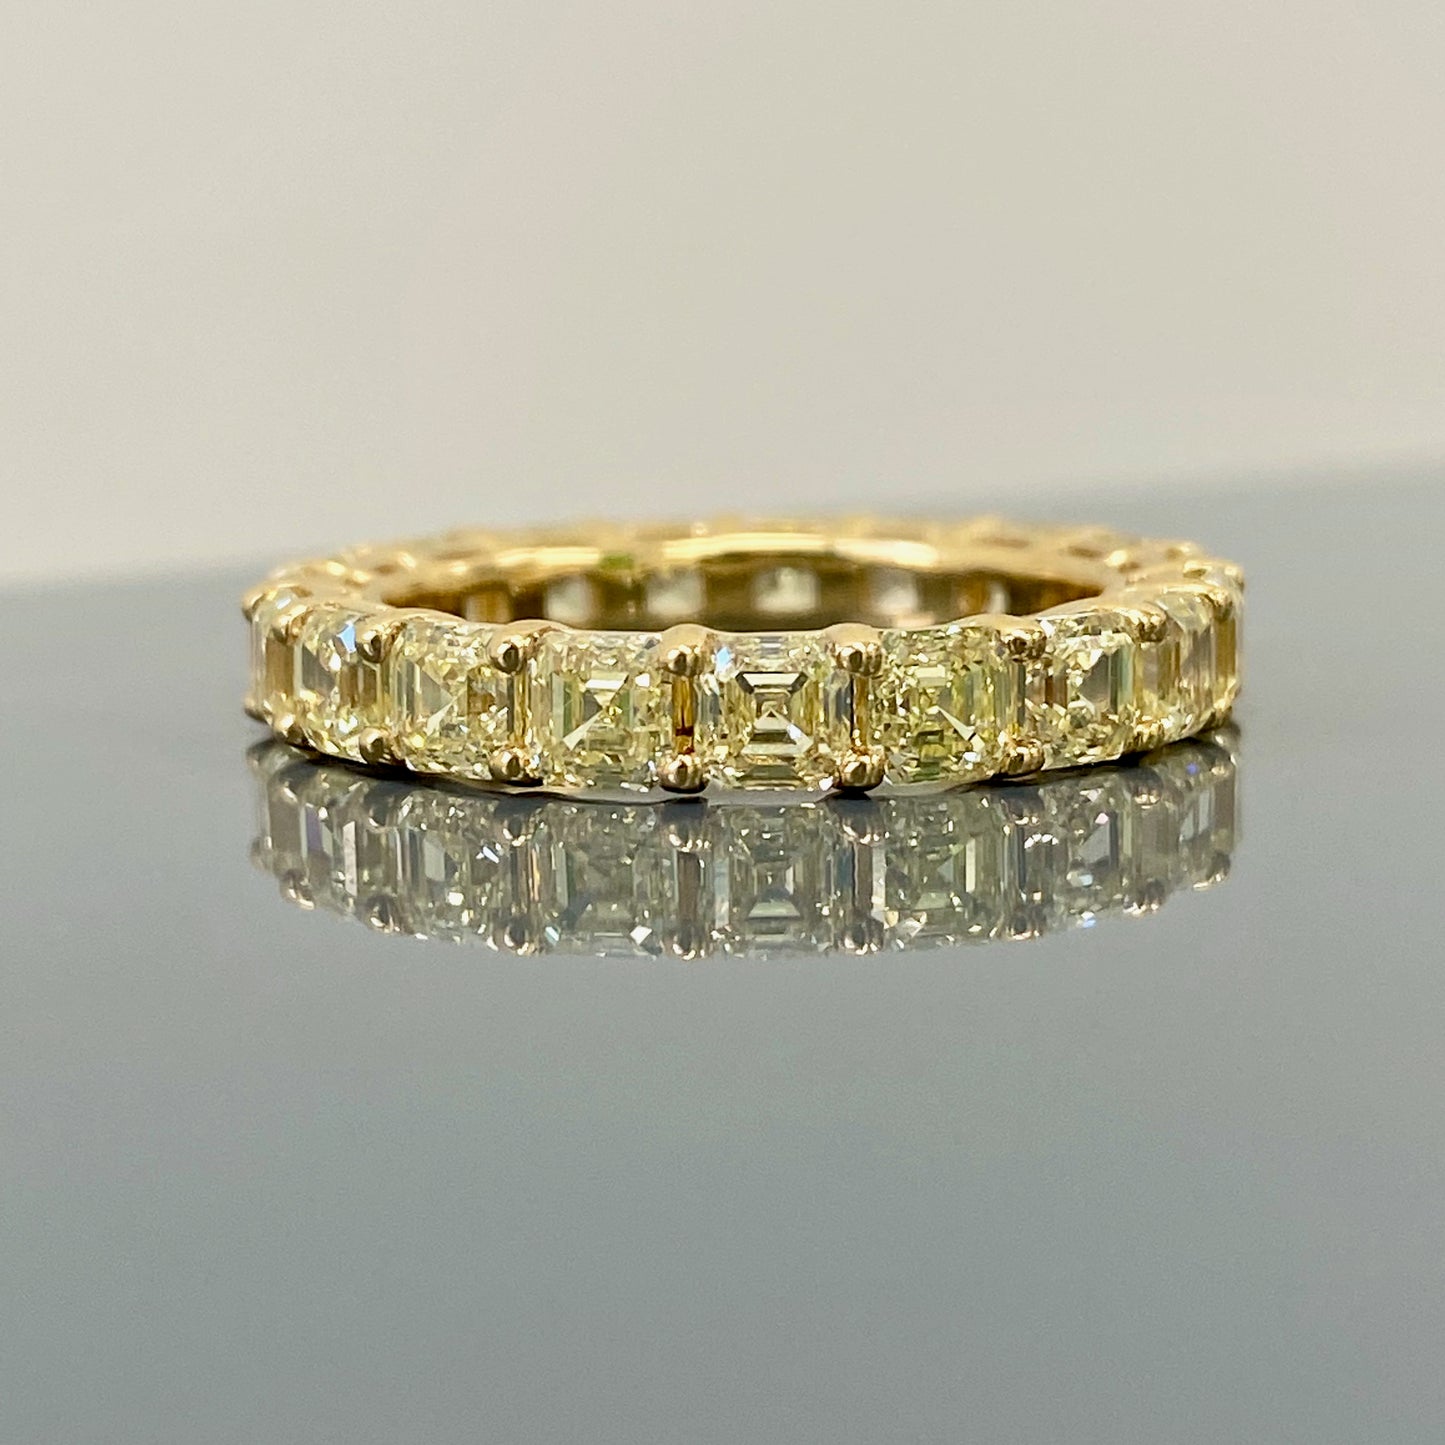 fancy yellow asscher cut diamond eternity band. yellow asscher cut diamonds. Diamond eternity ring. Diamond wedding band, 